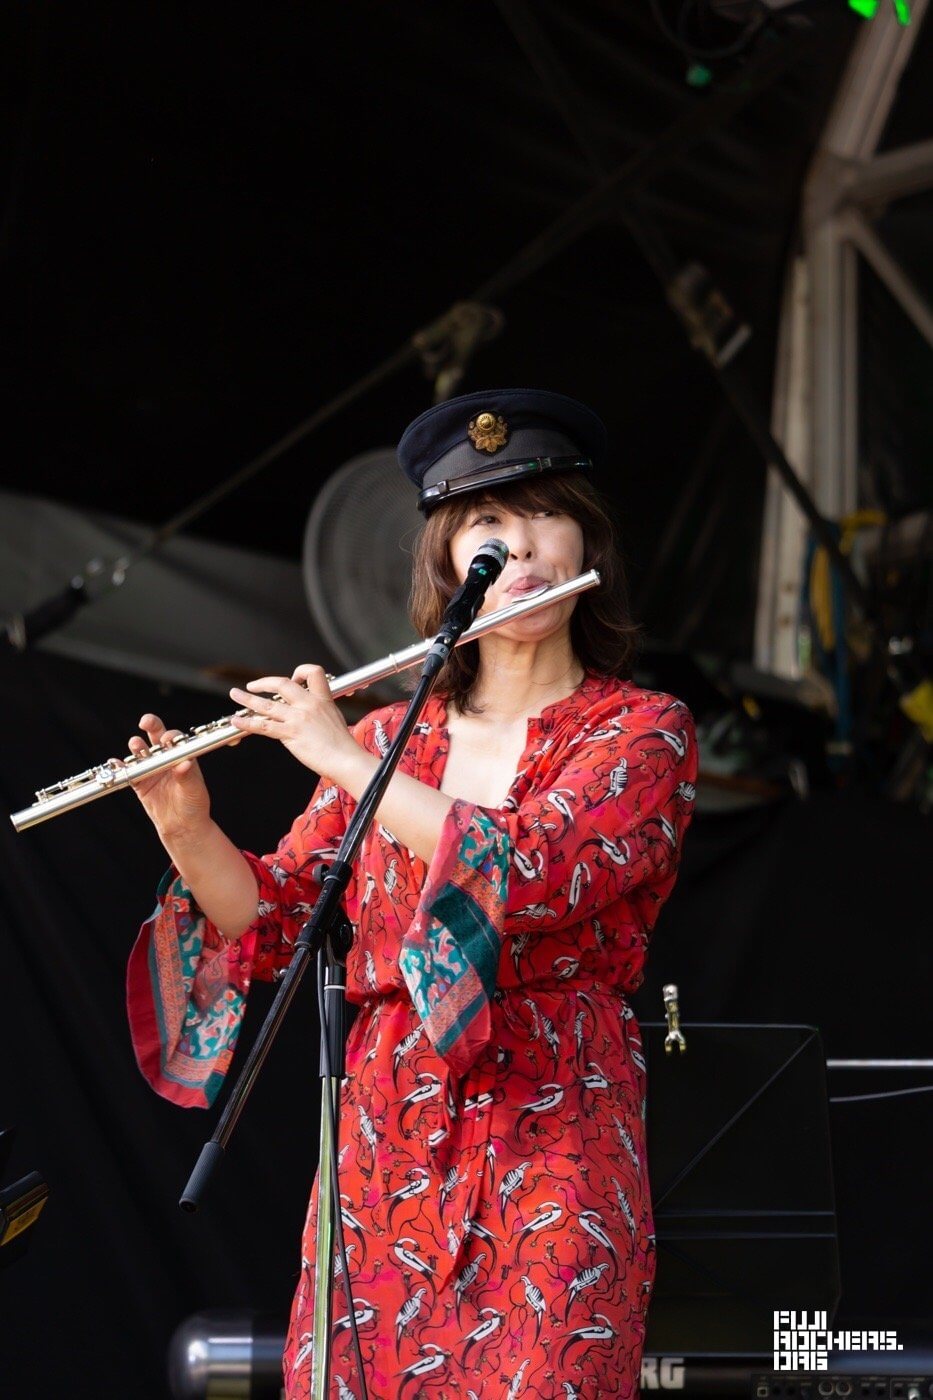 Eiko Ishibashi